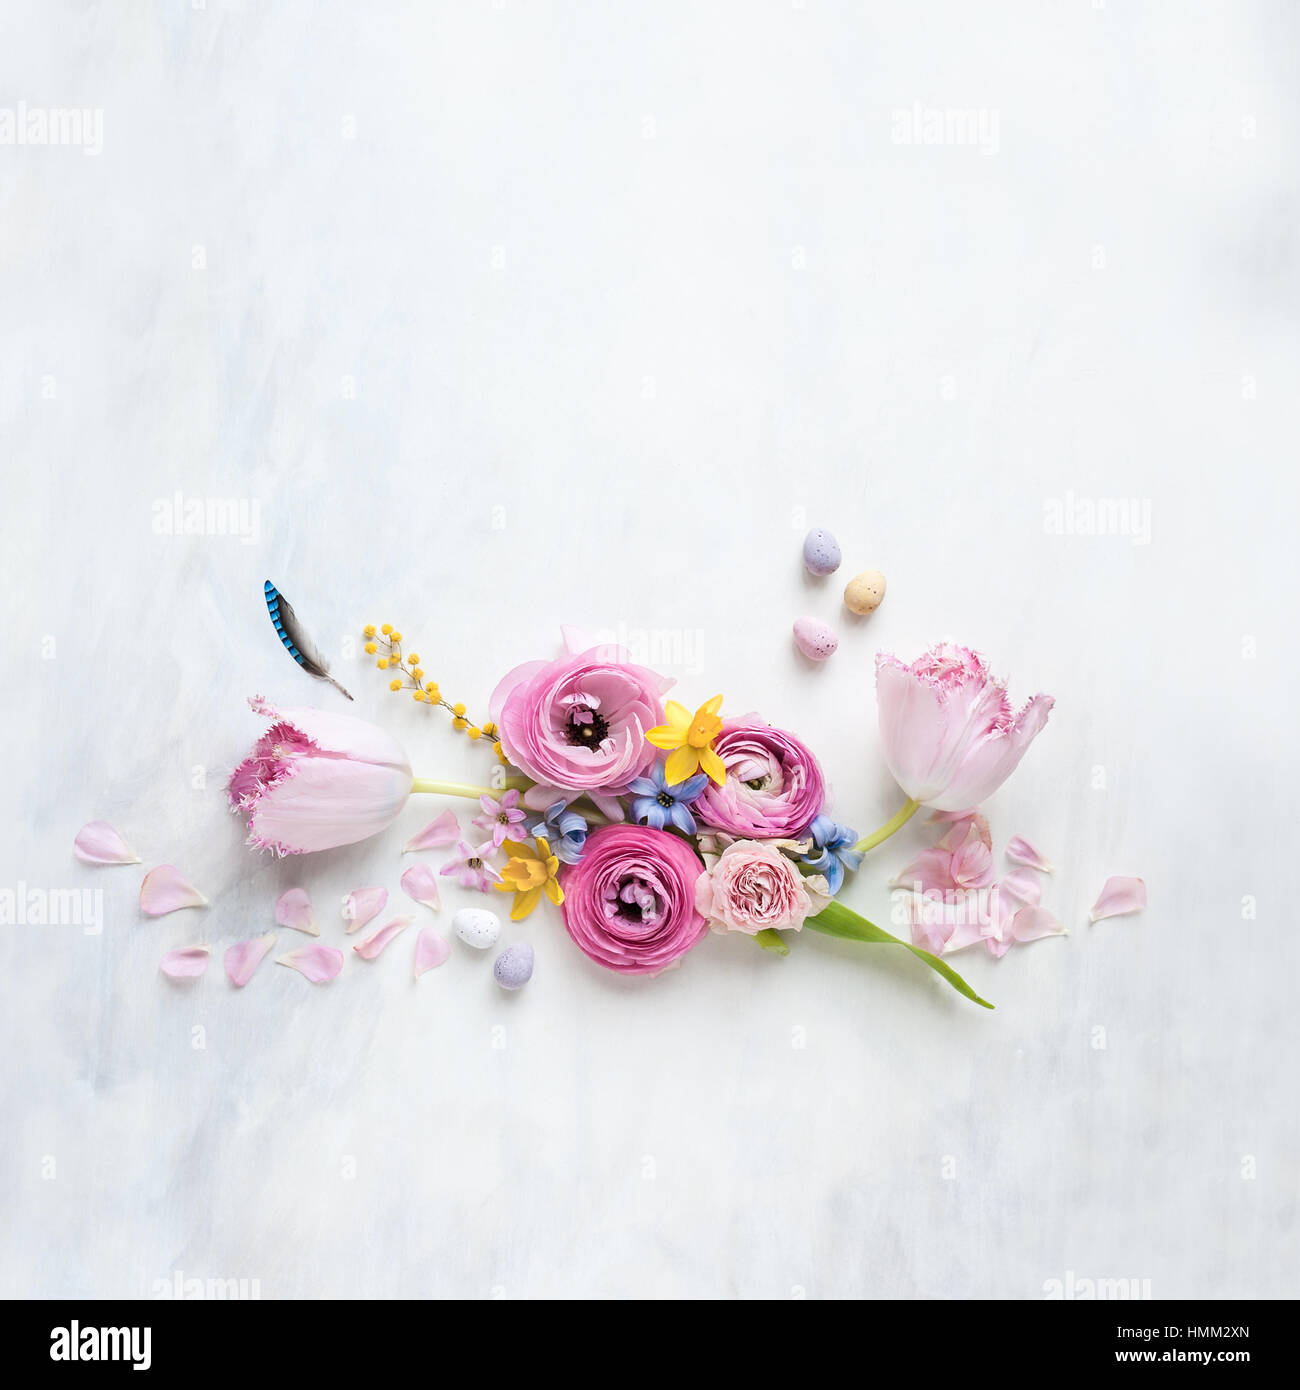 gestylte Stillleben flach lag mit Frühlingsblumen, Feder und Mini-Eiern, die in einer Reihe auf einem weißen und grauen strukturierten Hintergrund angeordnet Stockfoto